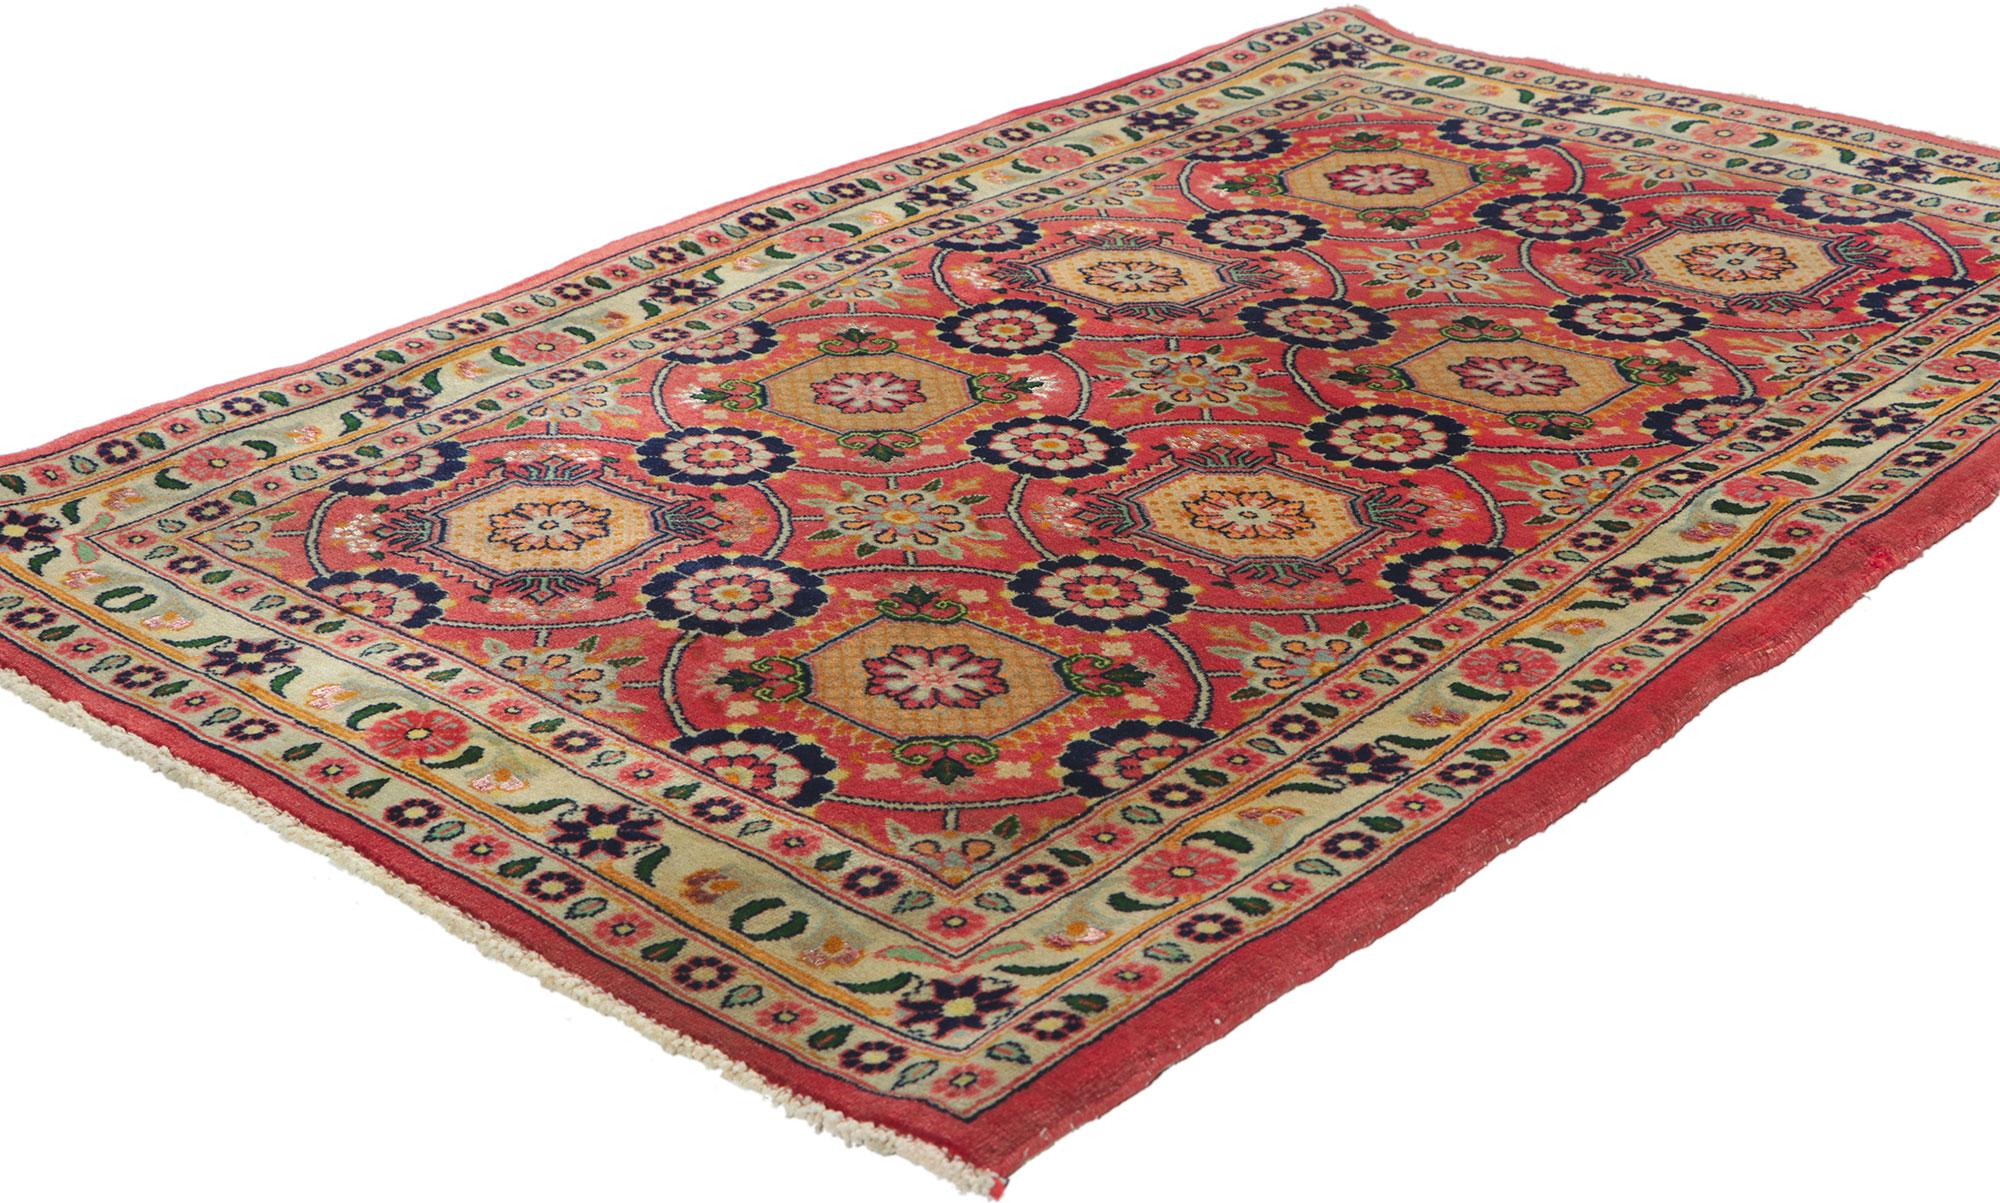 61041 Tapis persan Vintage Bijar, 02'07 x 03'11. Embarquez pour une odyssée enchanteresse de l'élégance mauresque avec ce tapis persan vintage Bijar en laine nouée à la main. Ce tapis magique est un voyage dans un monde inondé de teintes rappelant